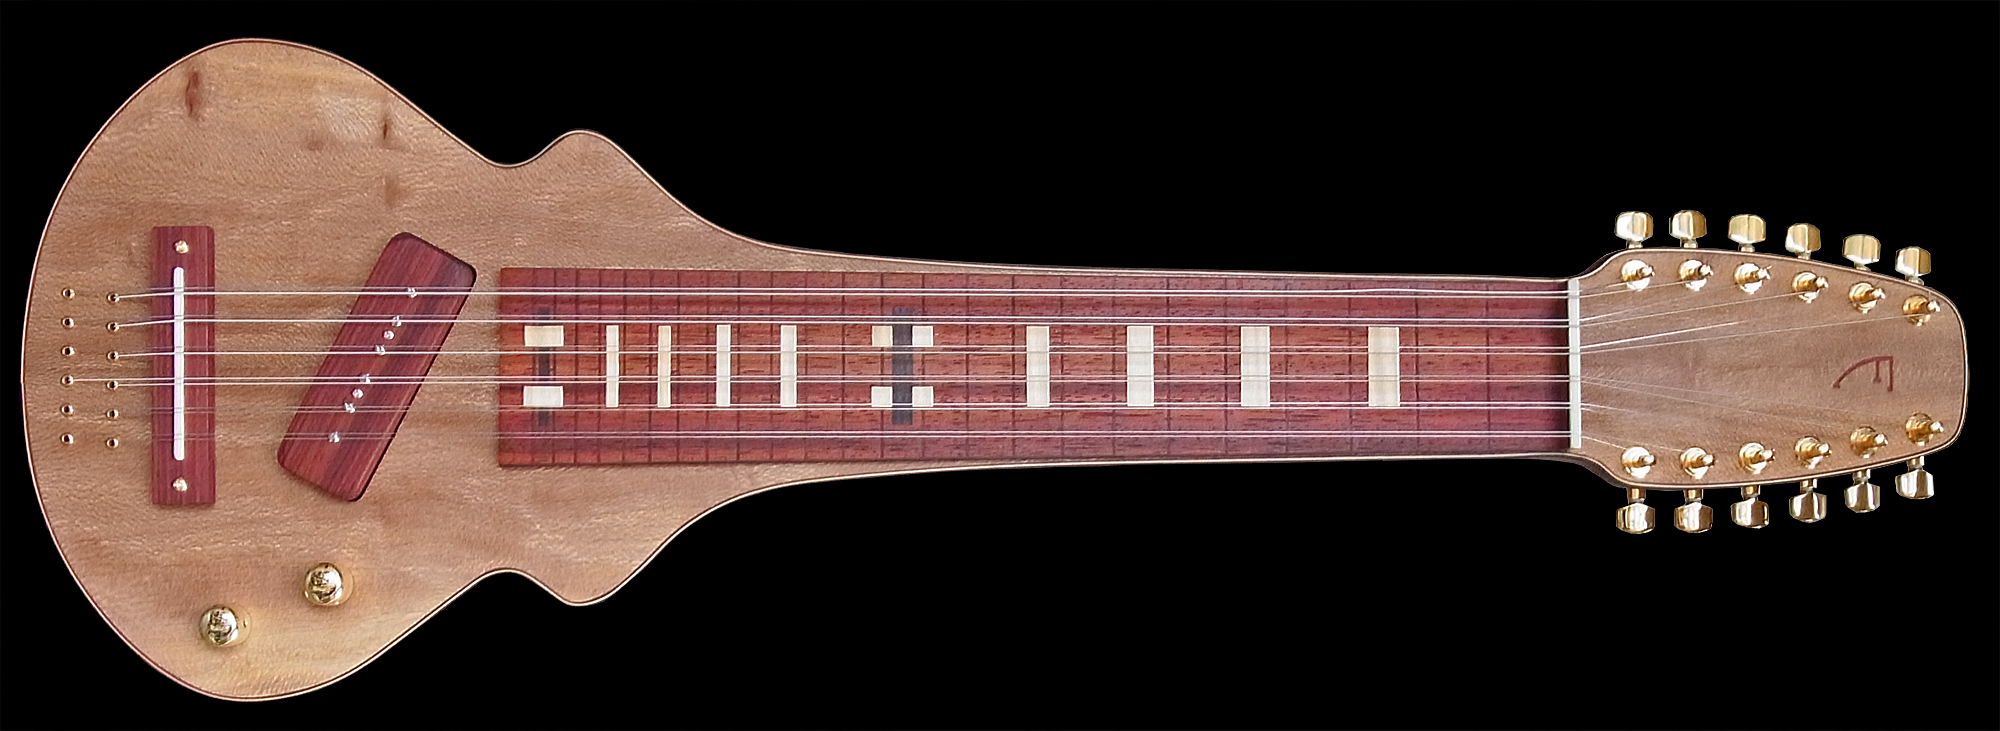 #86, 12-snarige lapsteel gitaar gemaakt van plataan en padouk hout, met een schuin geplaatste pickup. Vooraanzicht.